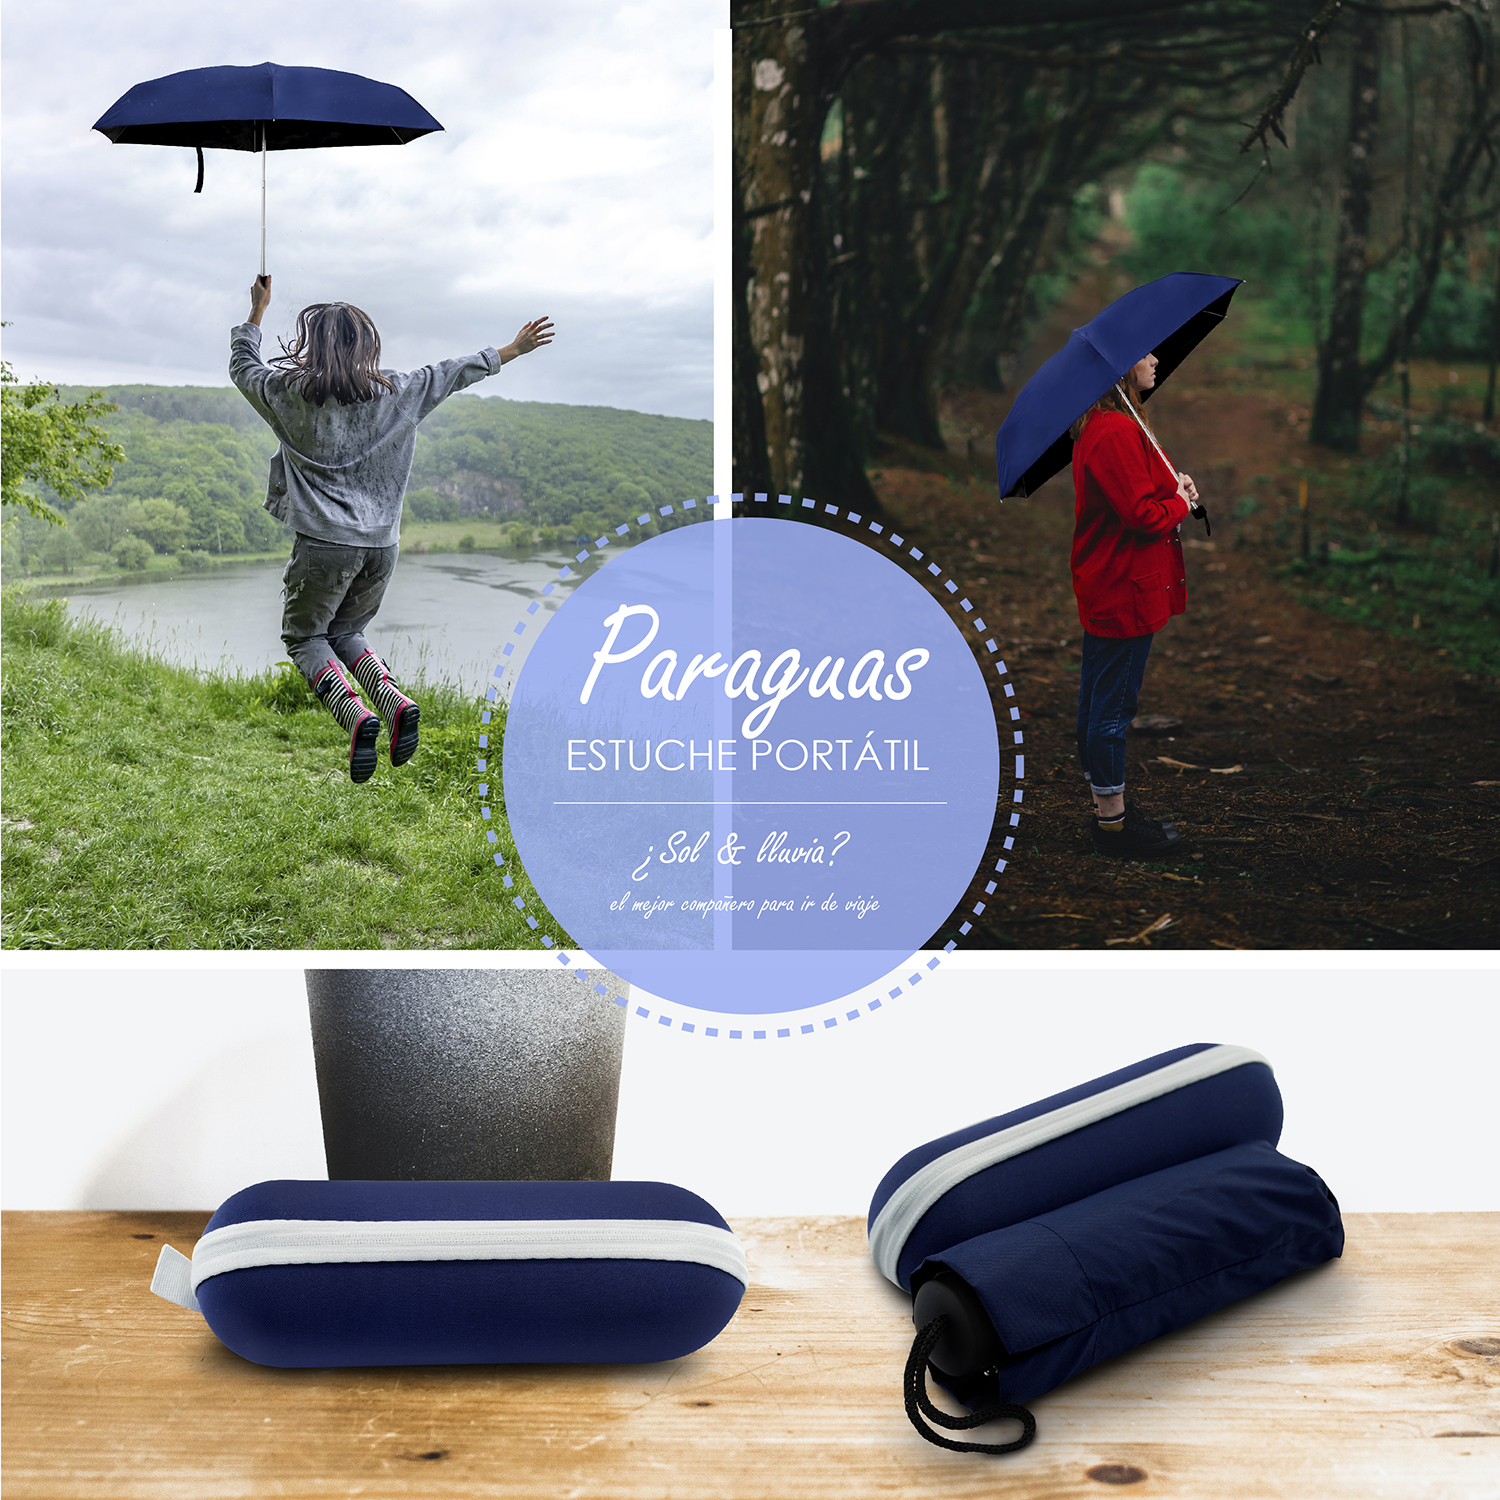 Tela impermeable ligera para forros, paraguas y mas color Azul Oscuro